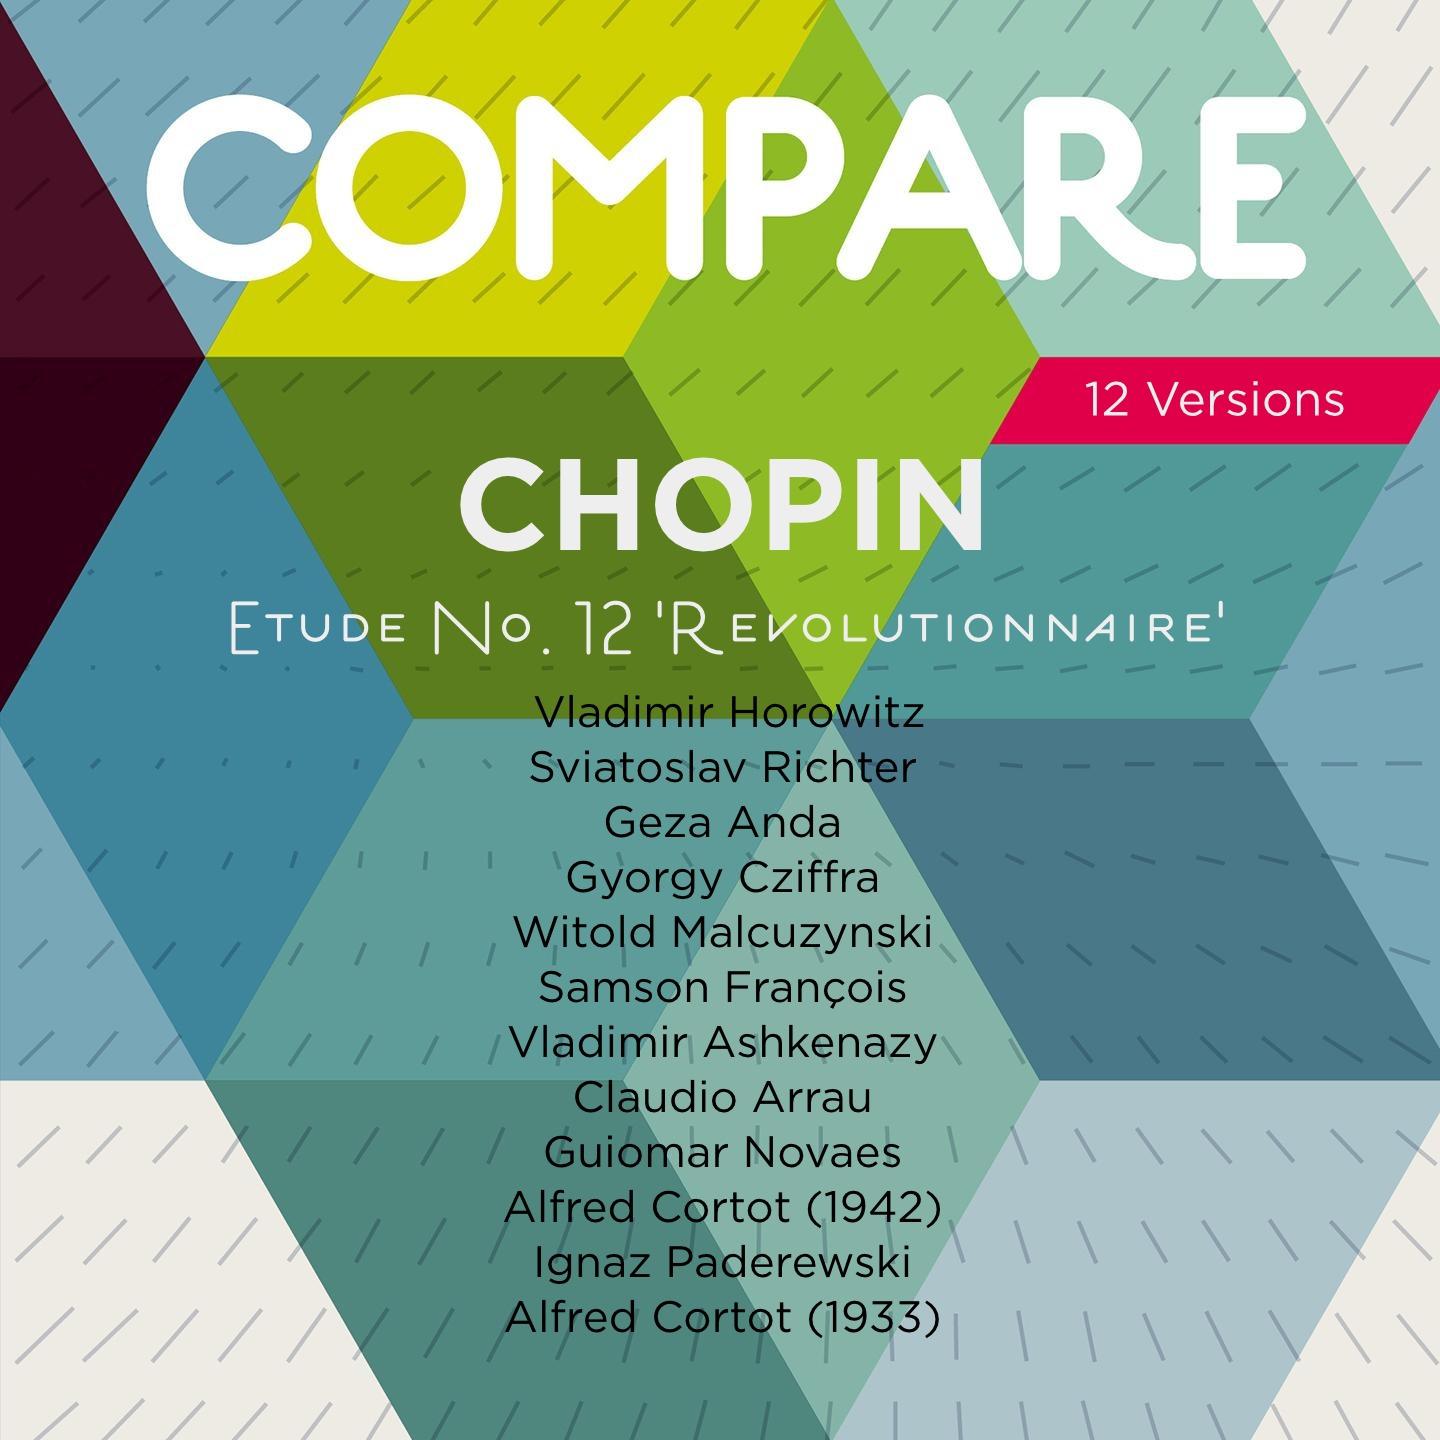 Chopin: Etudes, Op. 10 No. 12 "Revolutionary", Horowitz vs. Richter vs. Anda vs. Cziffra vs. Malcuzynski vs. François vs. Ashkenazy vs. Arrau vs. Novaes vs. Cortot vs. Paderewski